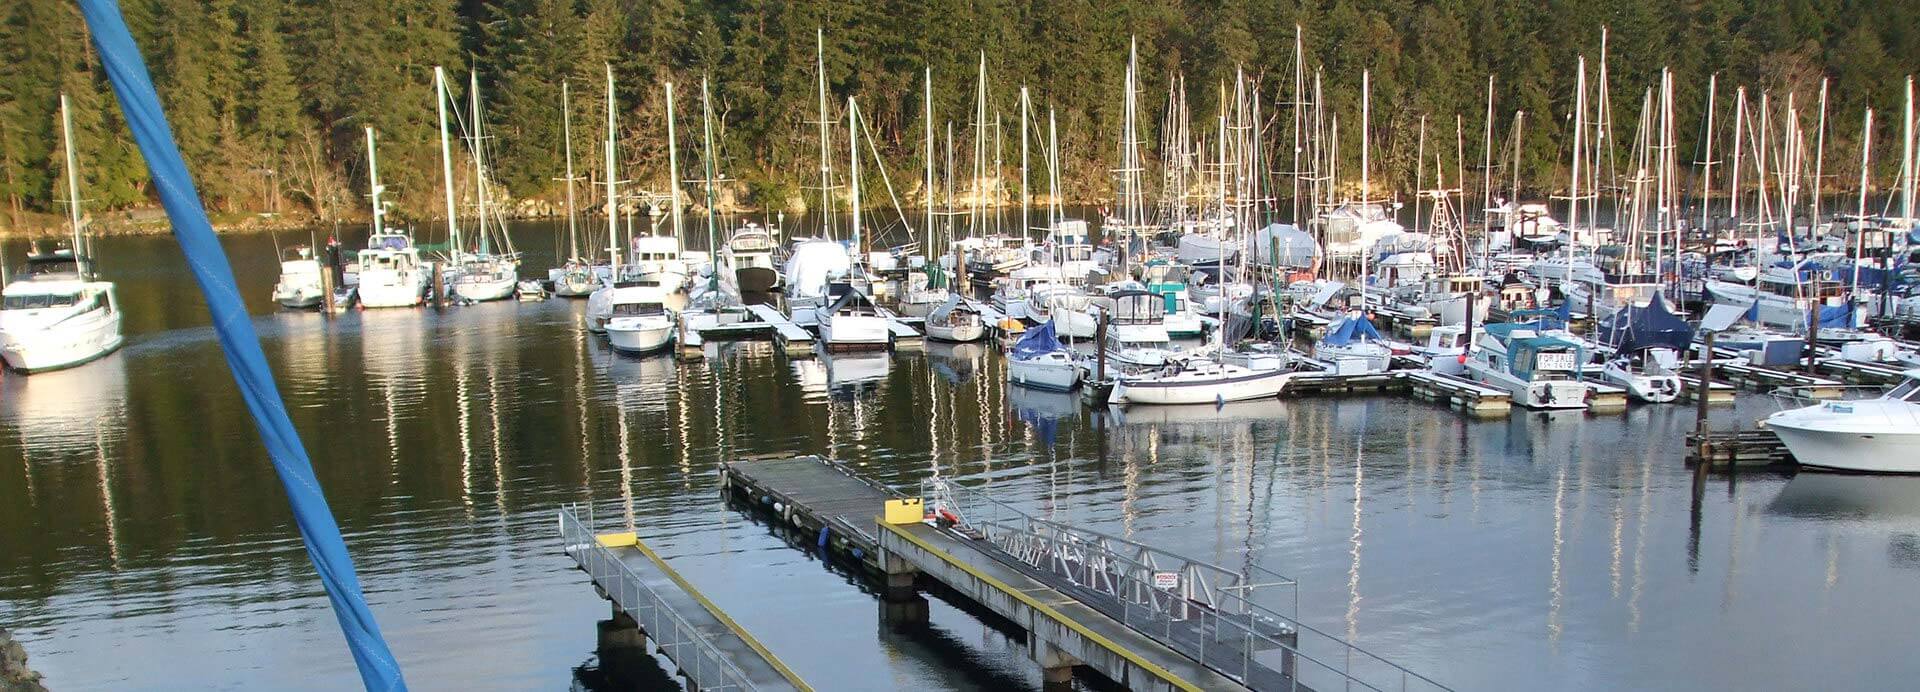 Nanaimo Boat Yard